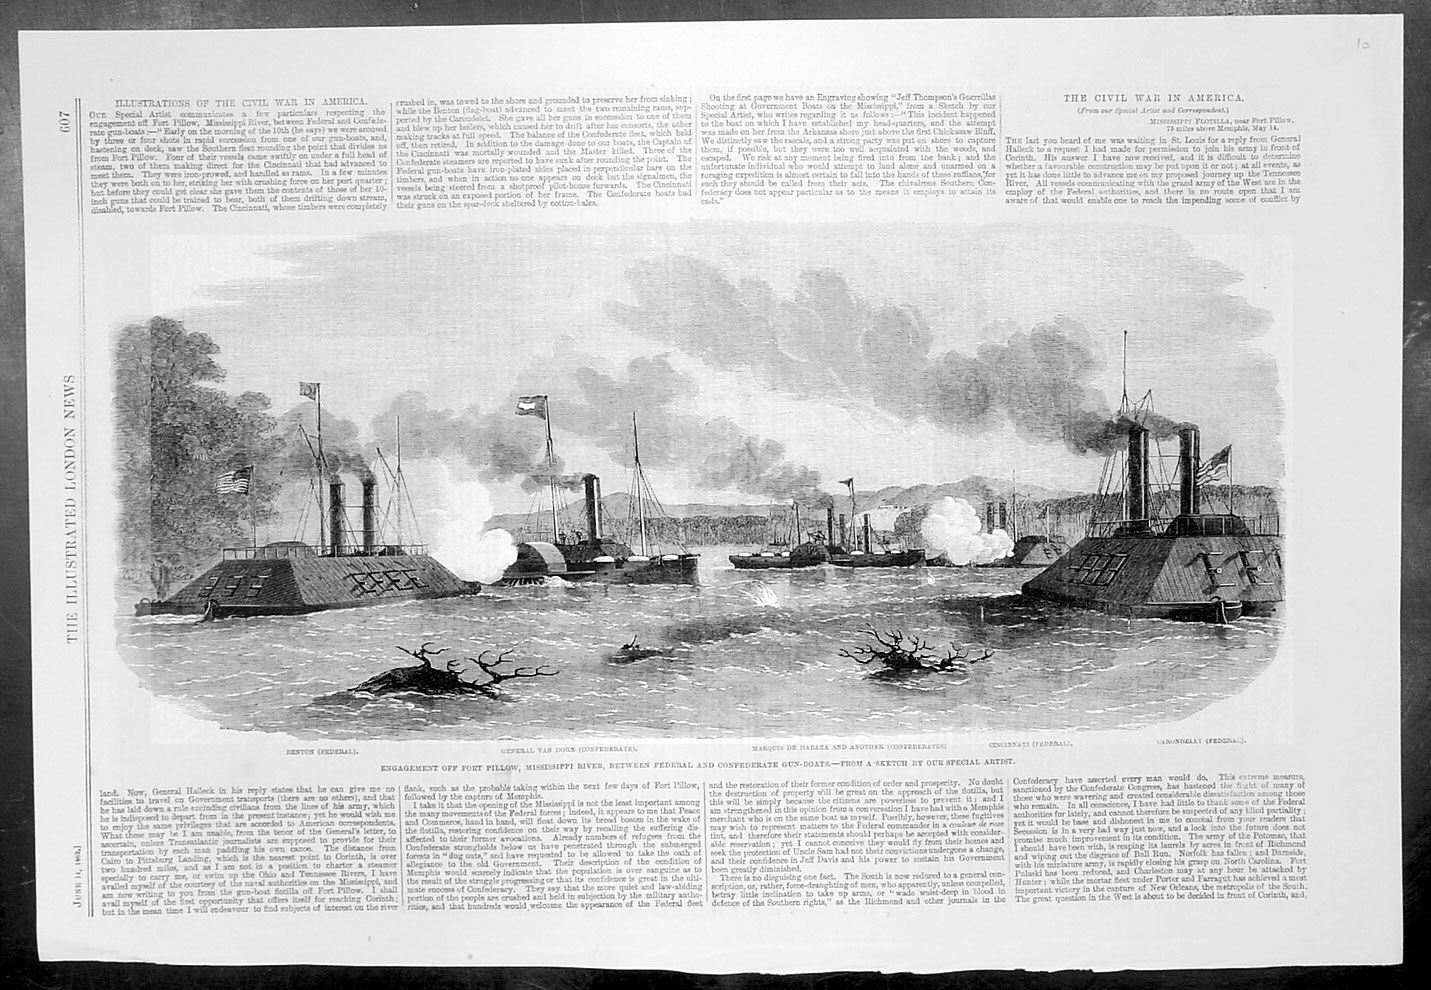  battle off fort pillow between the federal gun boats benton cincinnati